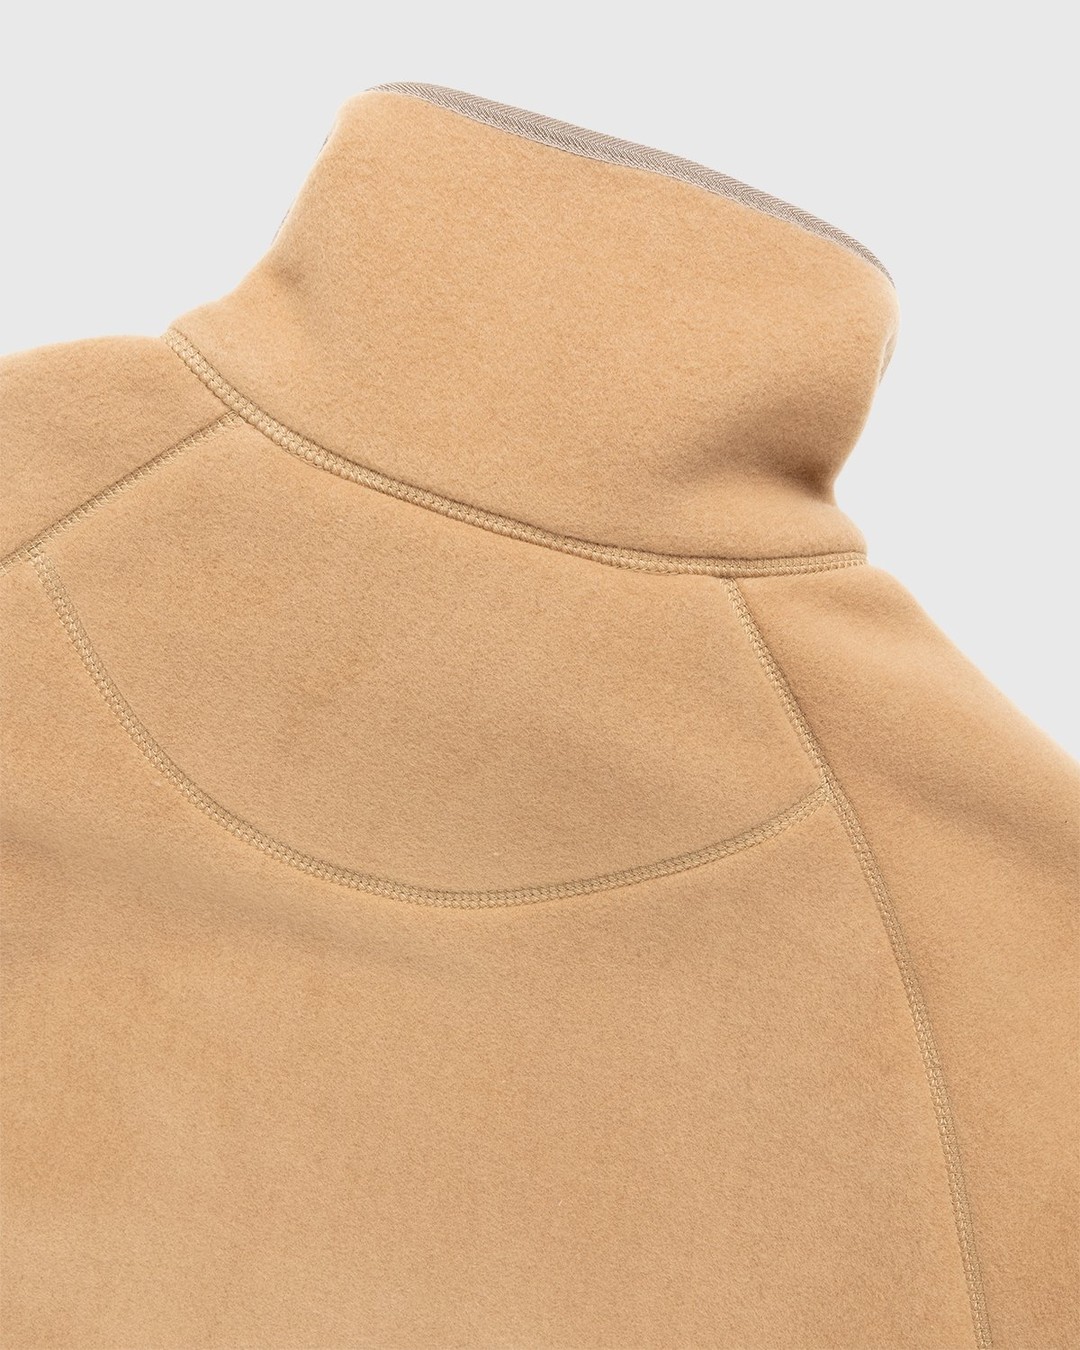 Acne Studios – Polar Fleece Jacket Camel Brown - Outerwear - Brown - Image 3